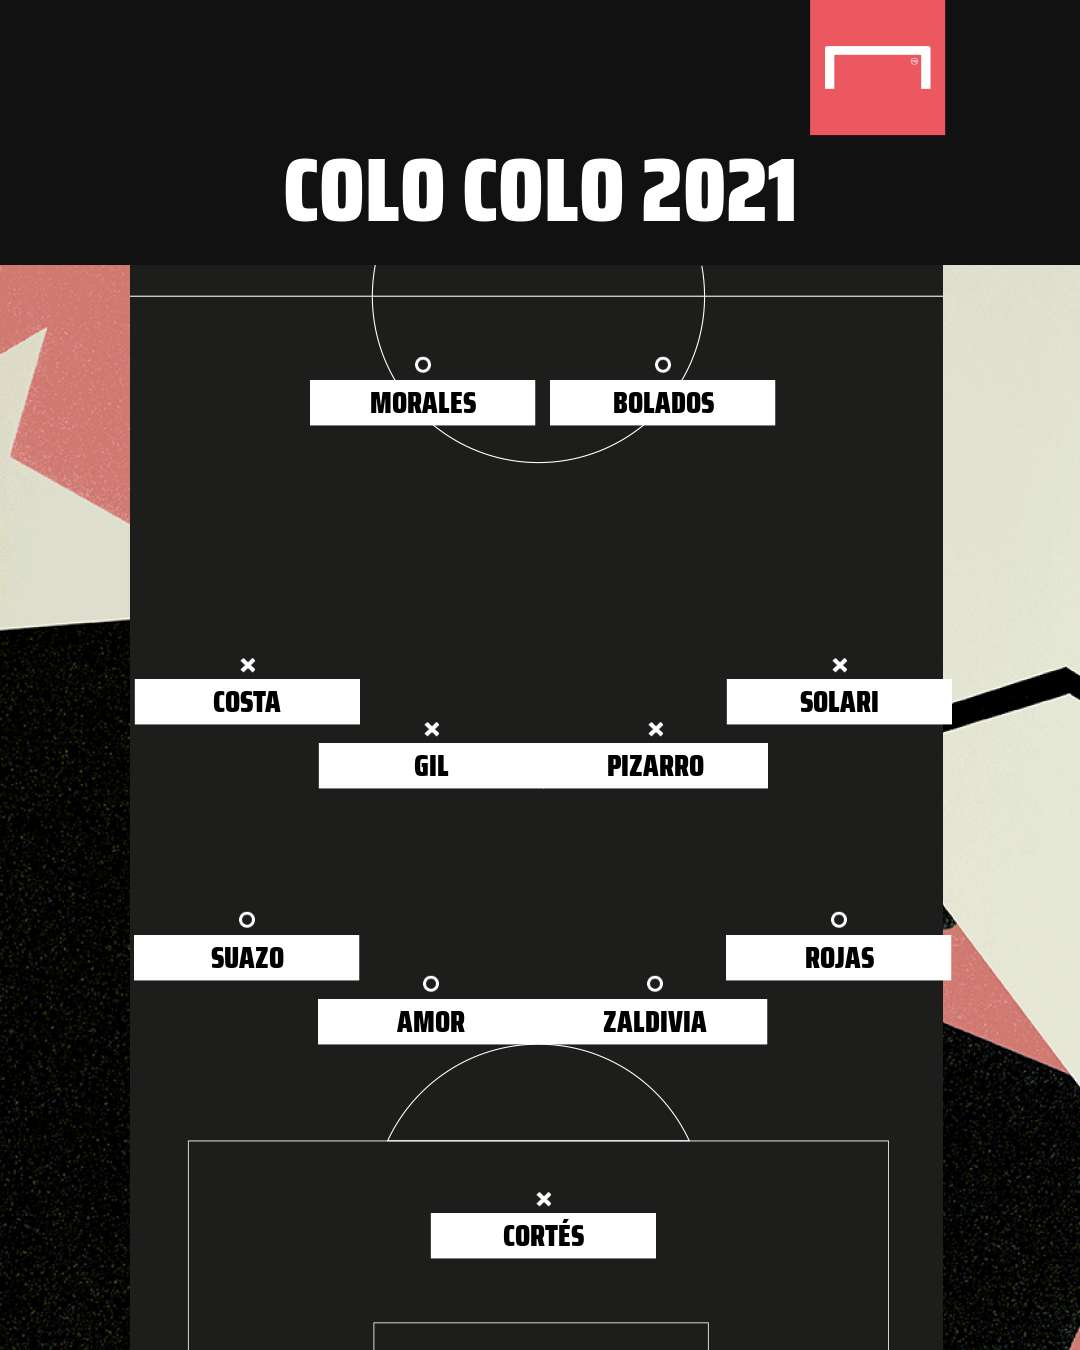 Colo Colo 2021